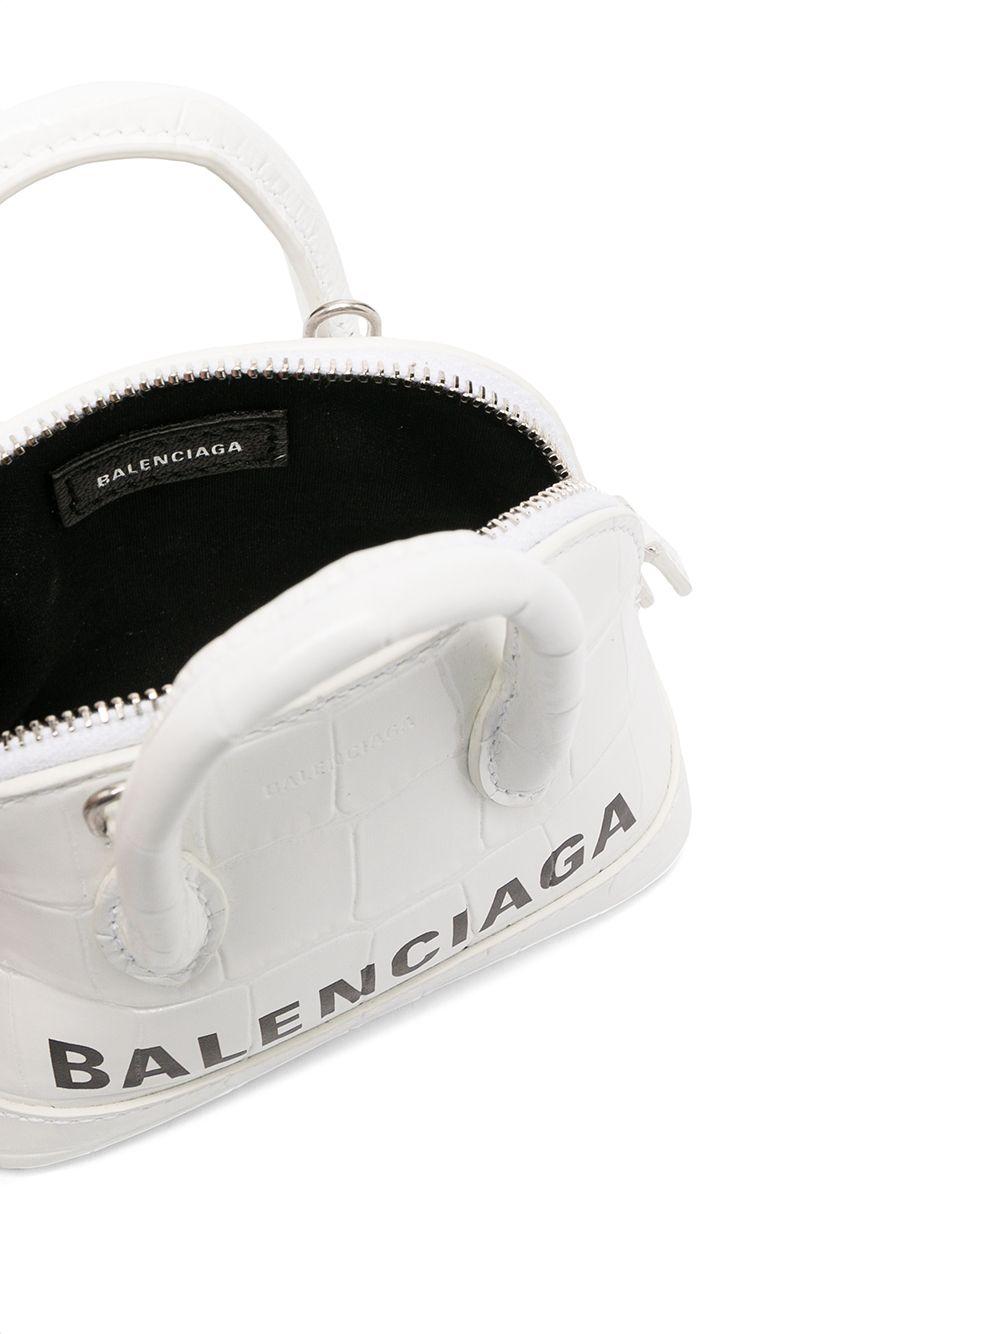 Balenciaga Ville XXS AJ White Tote BagR$ 7.191,00